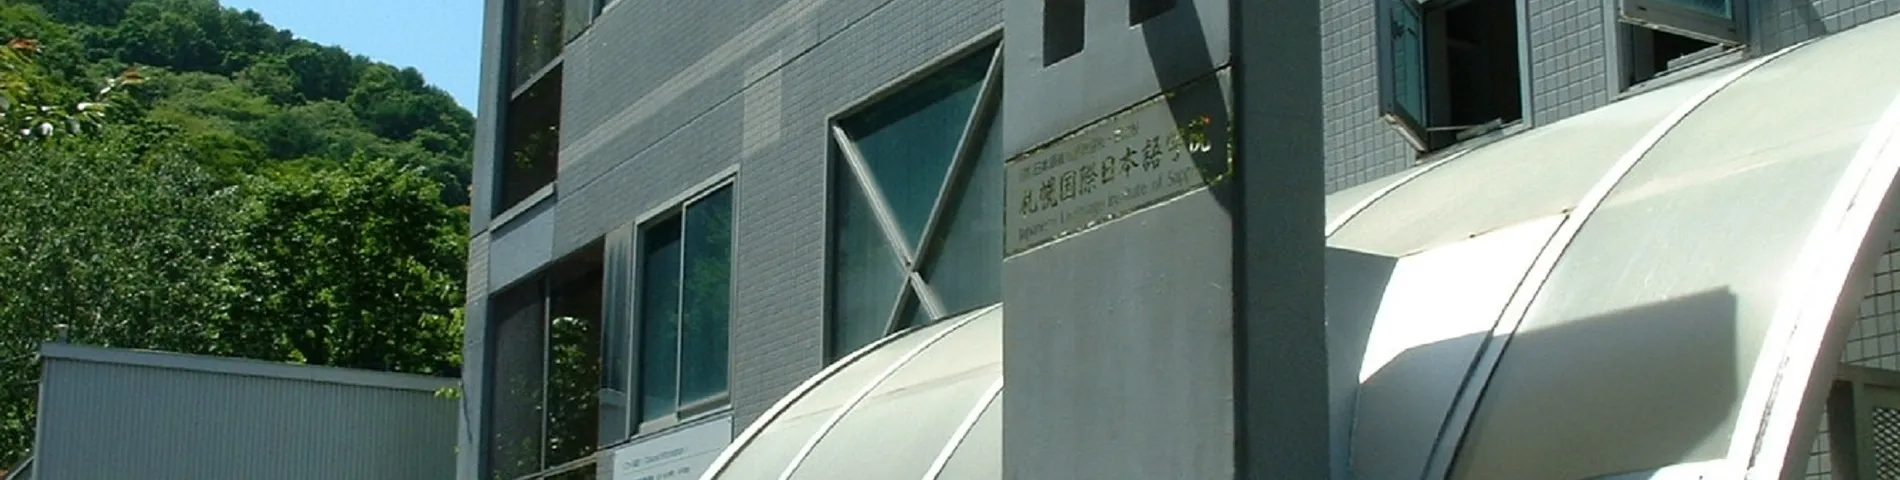 Japanese Language Institute of Sapporo immagine 1